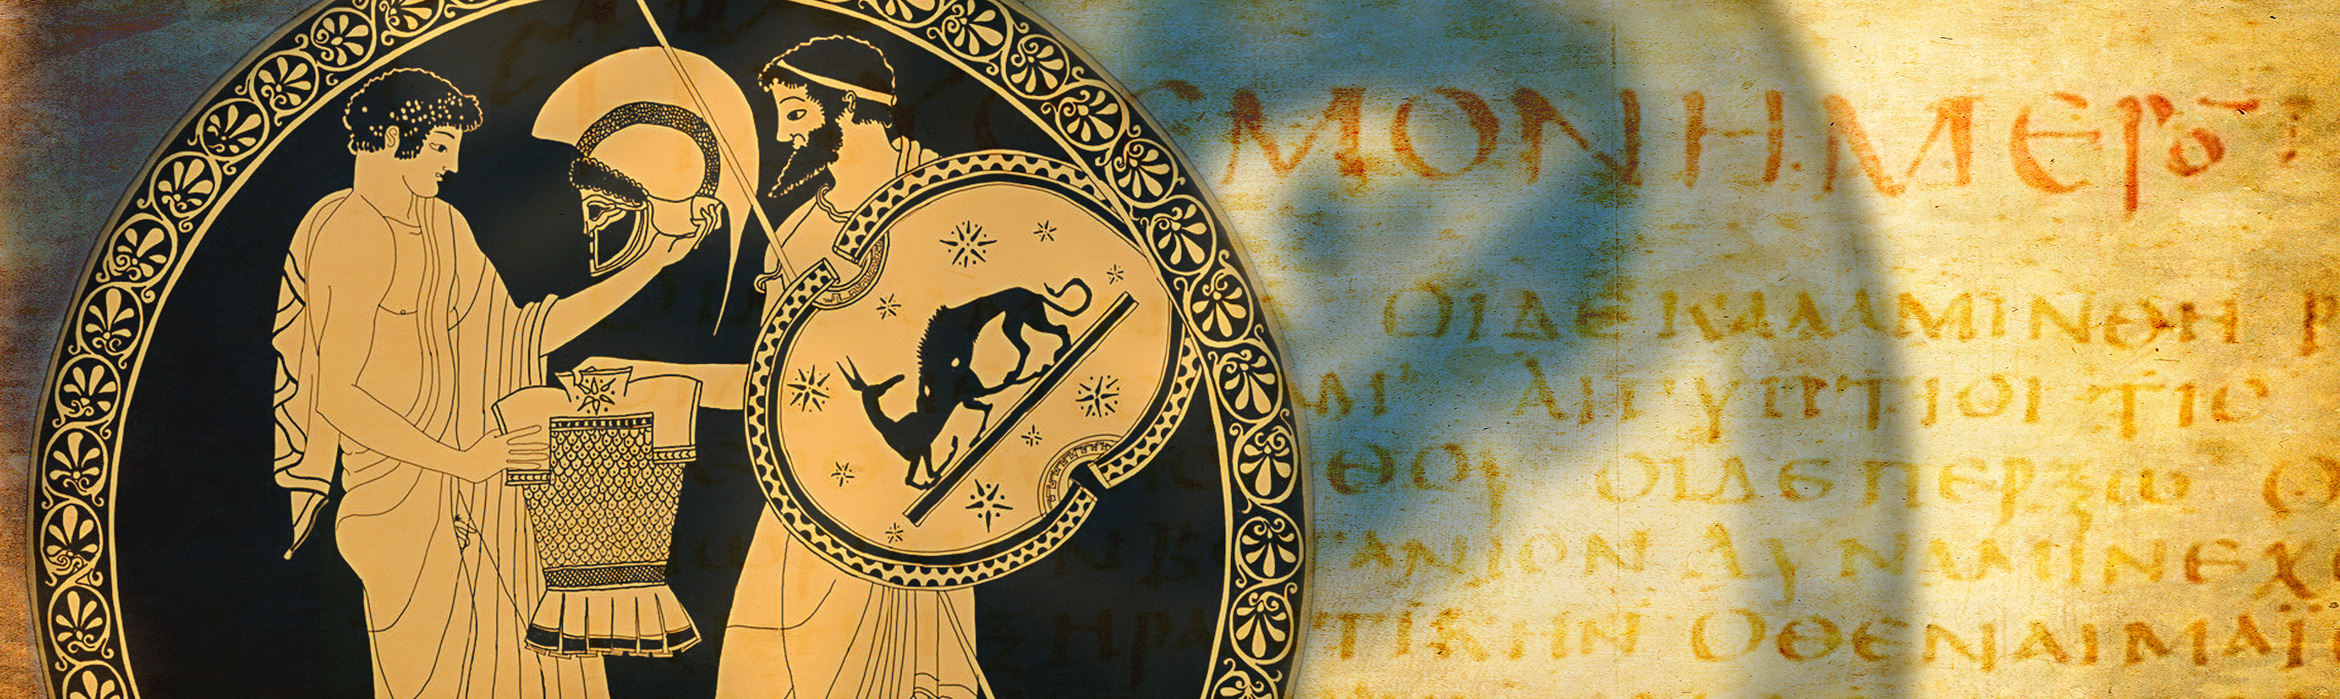 Composición donde se ven las cabezas de los dos personajes mitológicos, Neoptólemo y Odiseo sobre el manuscrito de Dioscórides